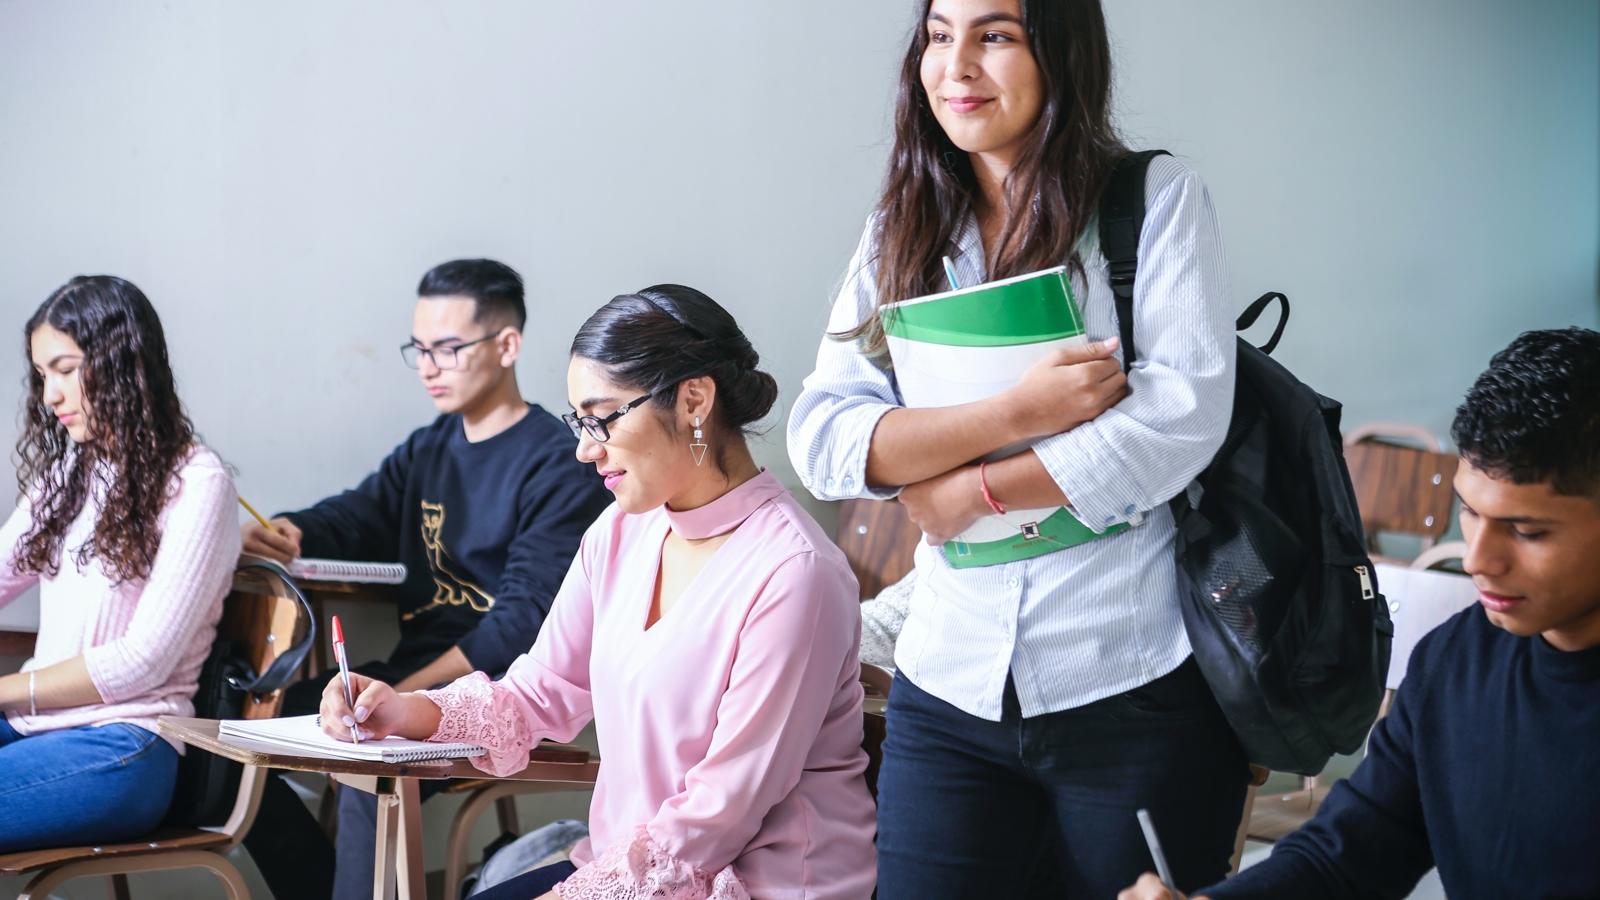 En ung kvinna med ryggsäck som går in i ett klassrum och håller i ett anteckningsblock. I klassrummet sitter det elever vid bänkar som sitter och skriver.